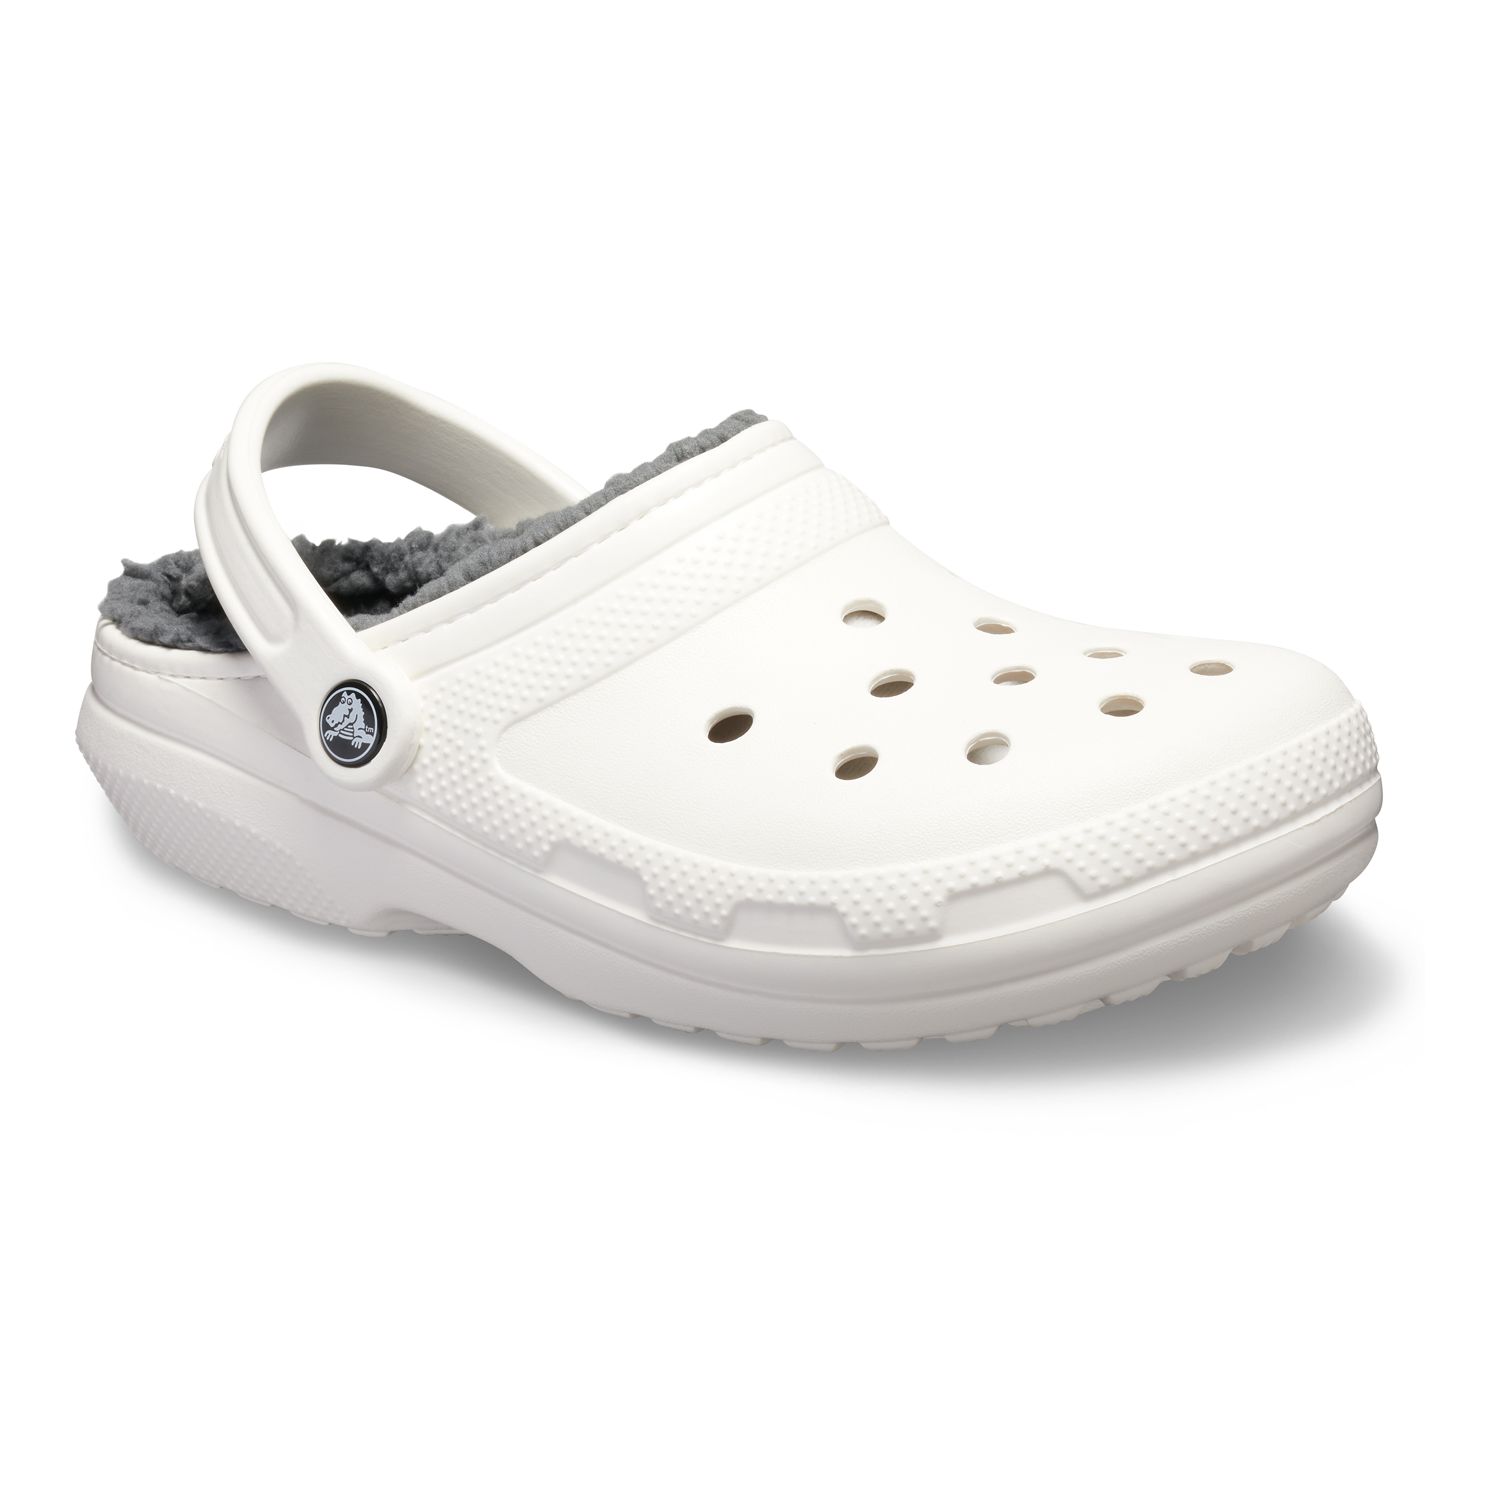 new men's crocs